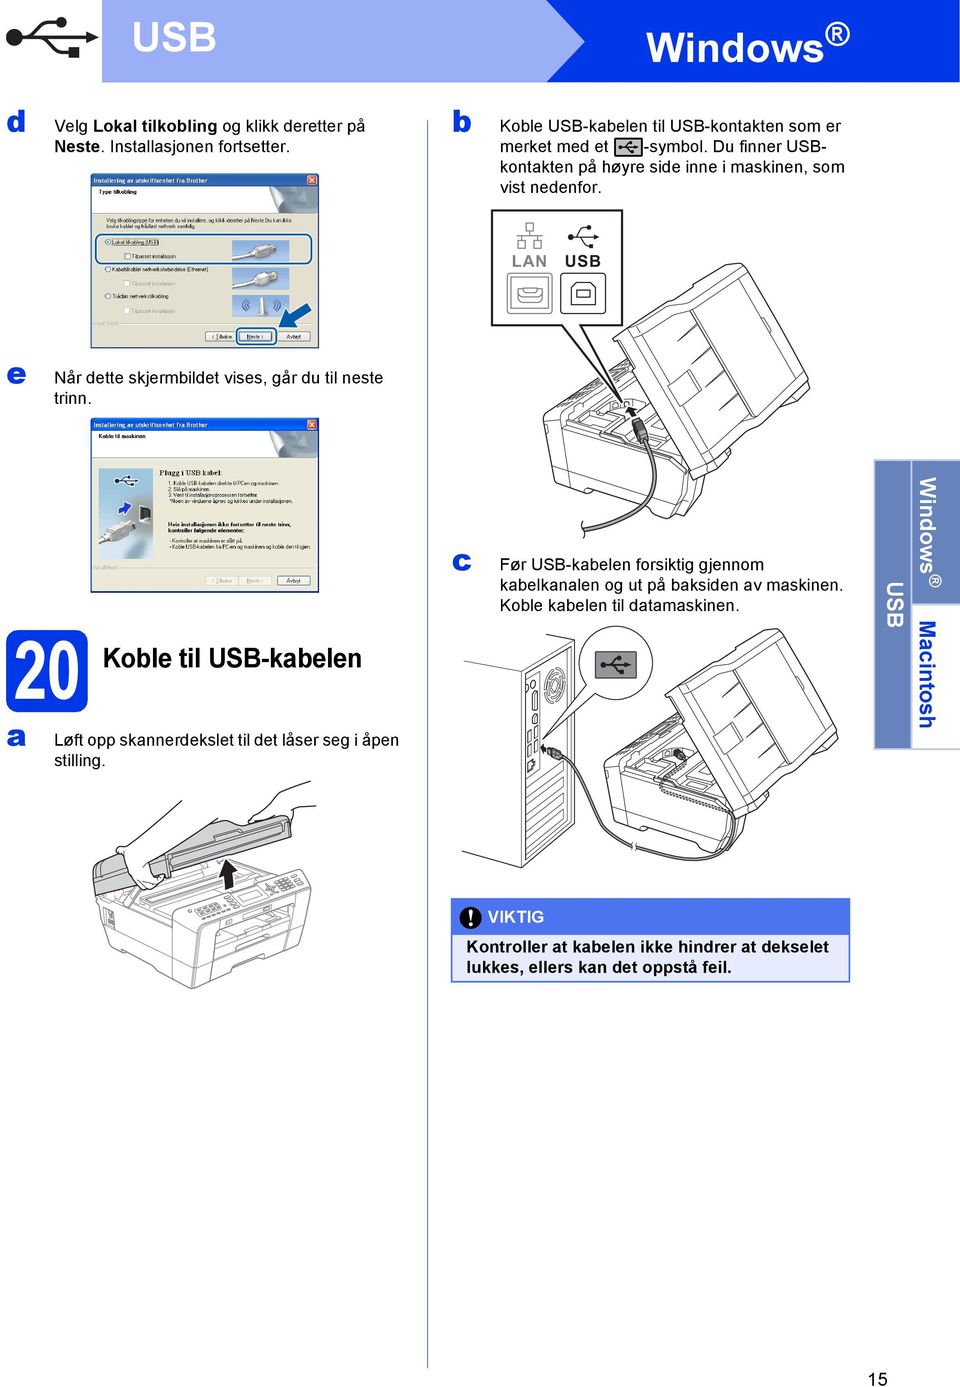 LAN USB e Når ette skjermilet vises, går u til neste trinn. 20 Kole til USB-kelen Løft opp sknnerekslet til et låser seg i åpen stilling.